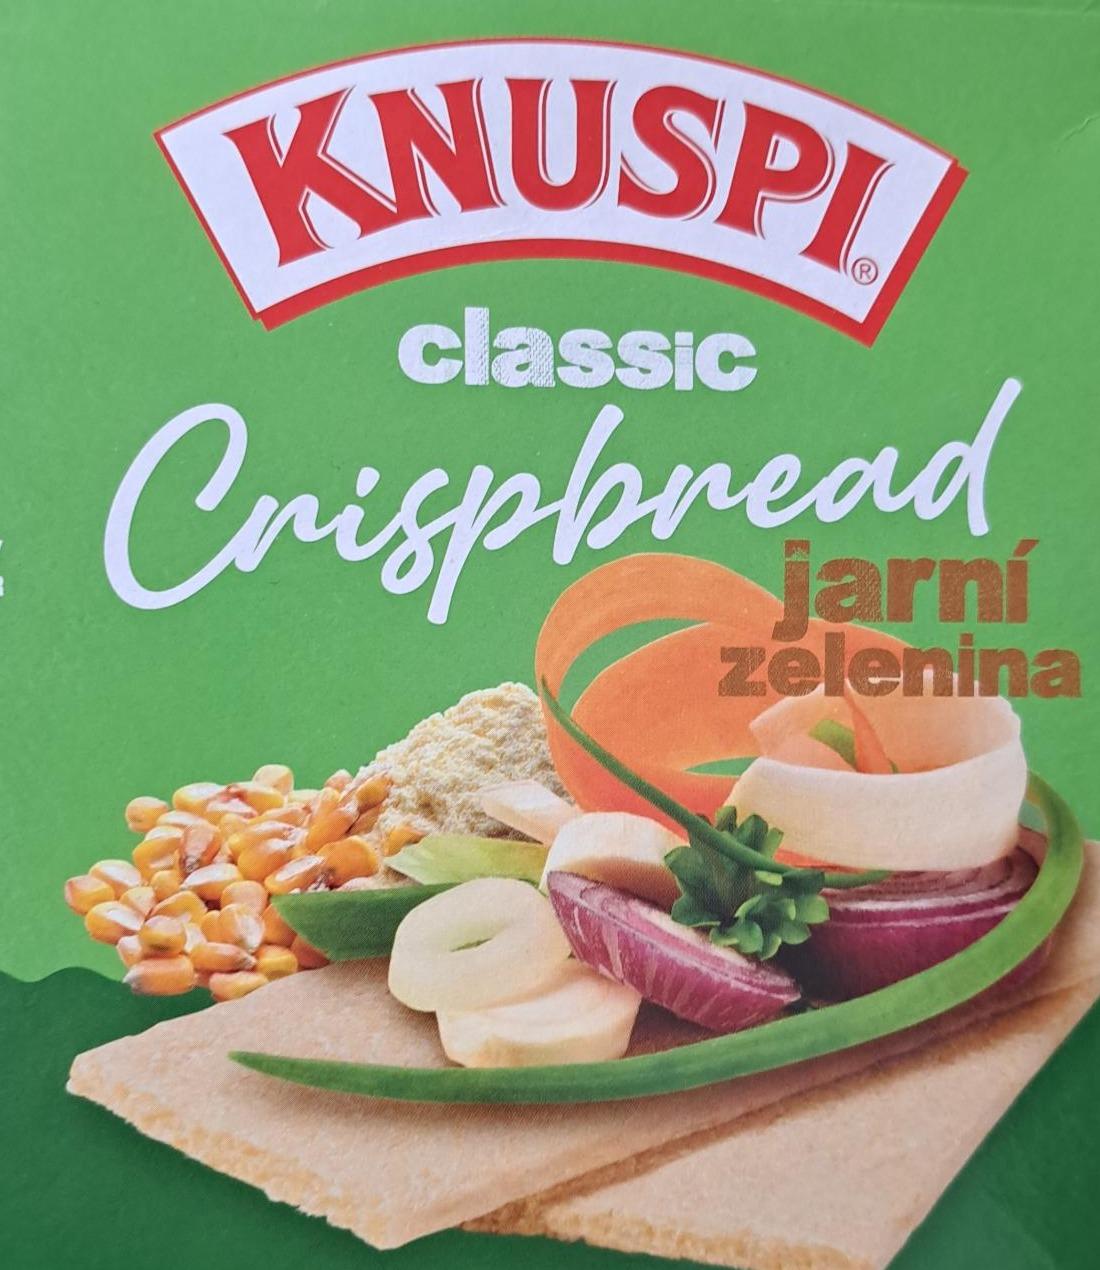 Фото - Knuspi classic crispbread jarní zelenina Knuspi